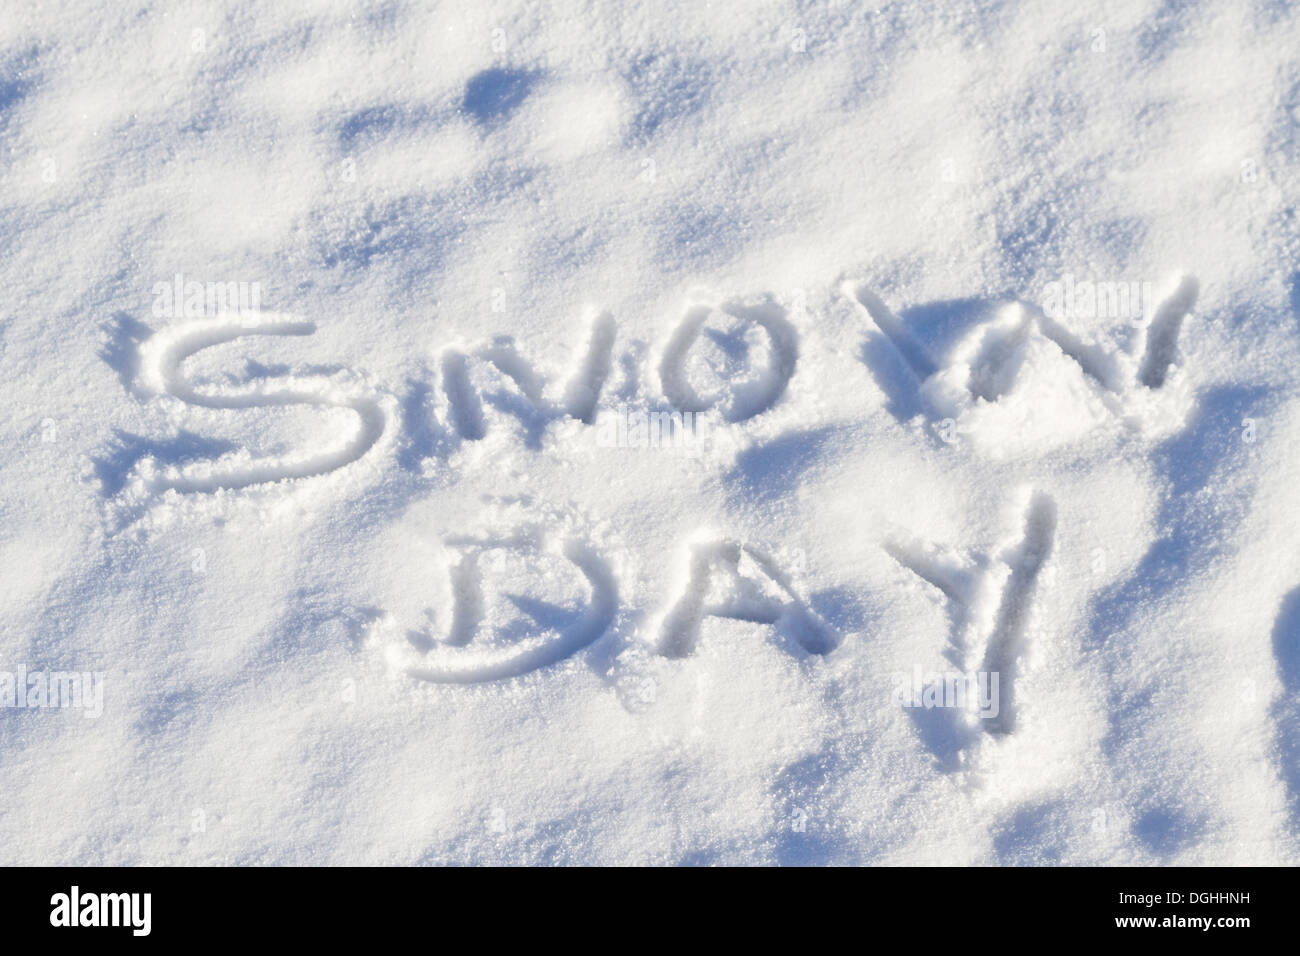 Snow Day escrito en letras mayúsculas en la nieve fresca significa ninguna escuela Foto de stock